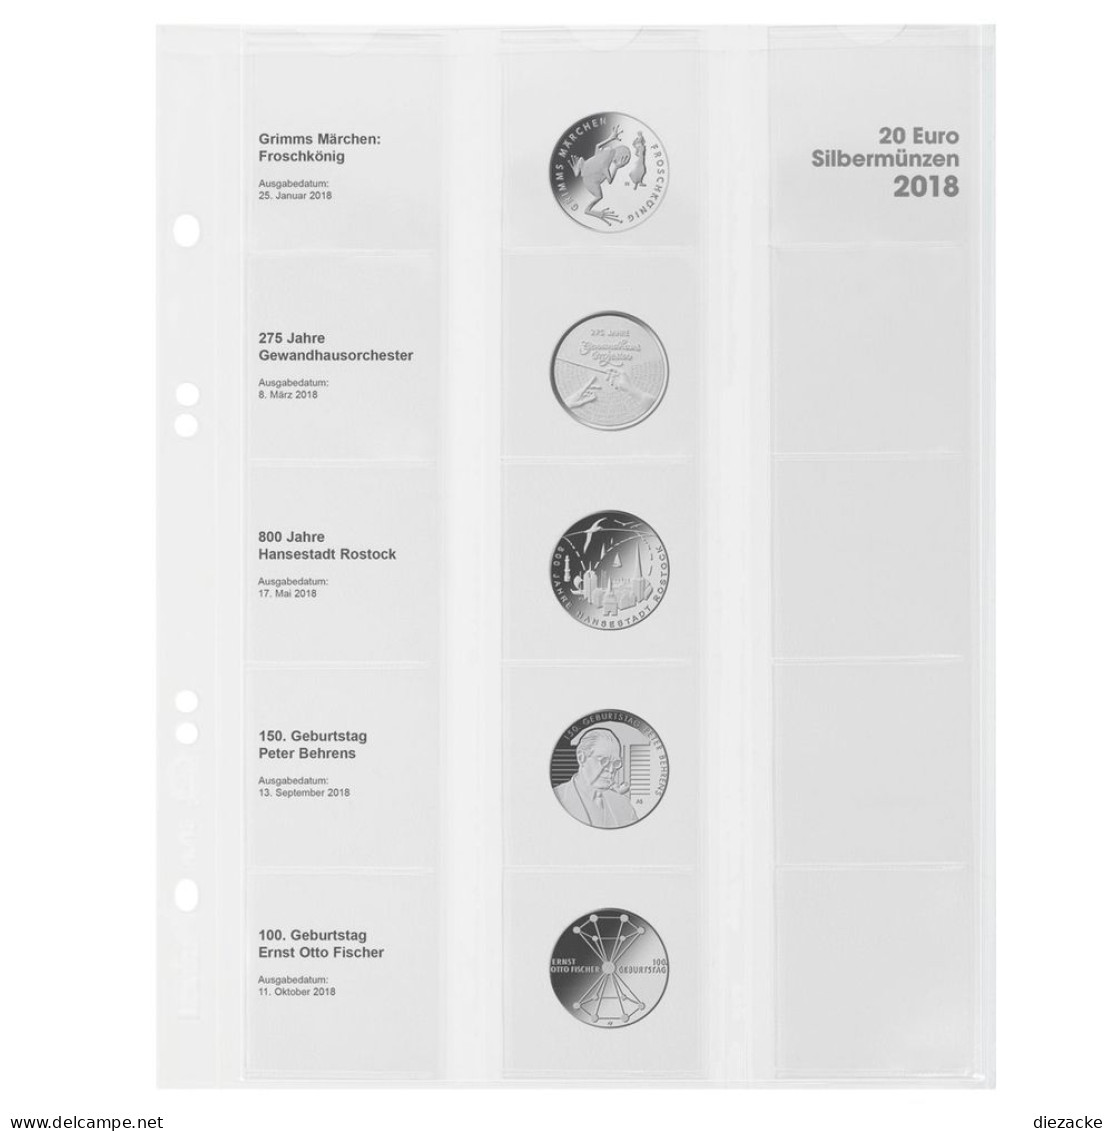 Lindner Vordruckblatt Publica M Für 20 Euro-Silbermünzen MU20E18 Neu - Materiale